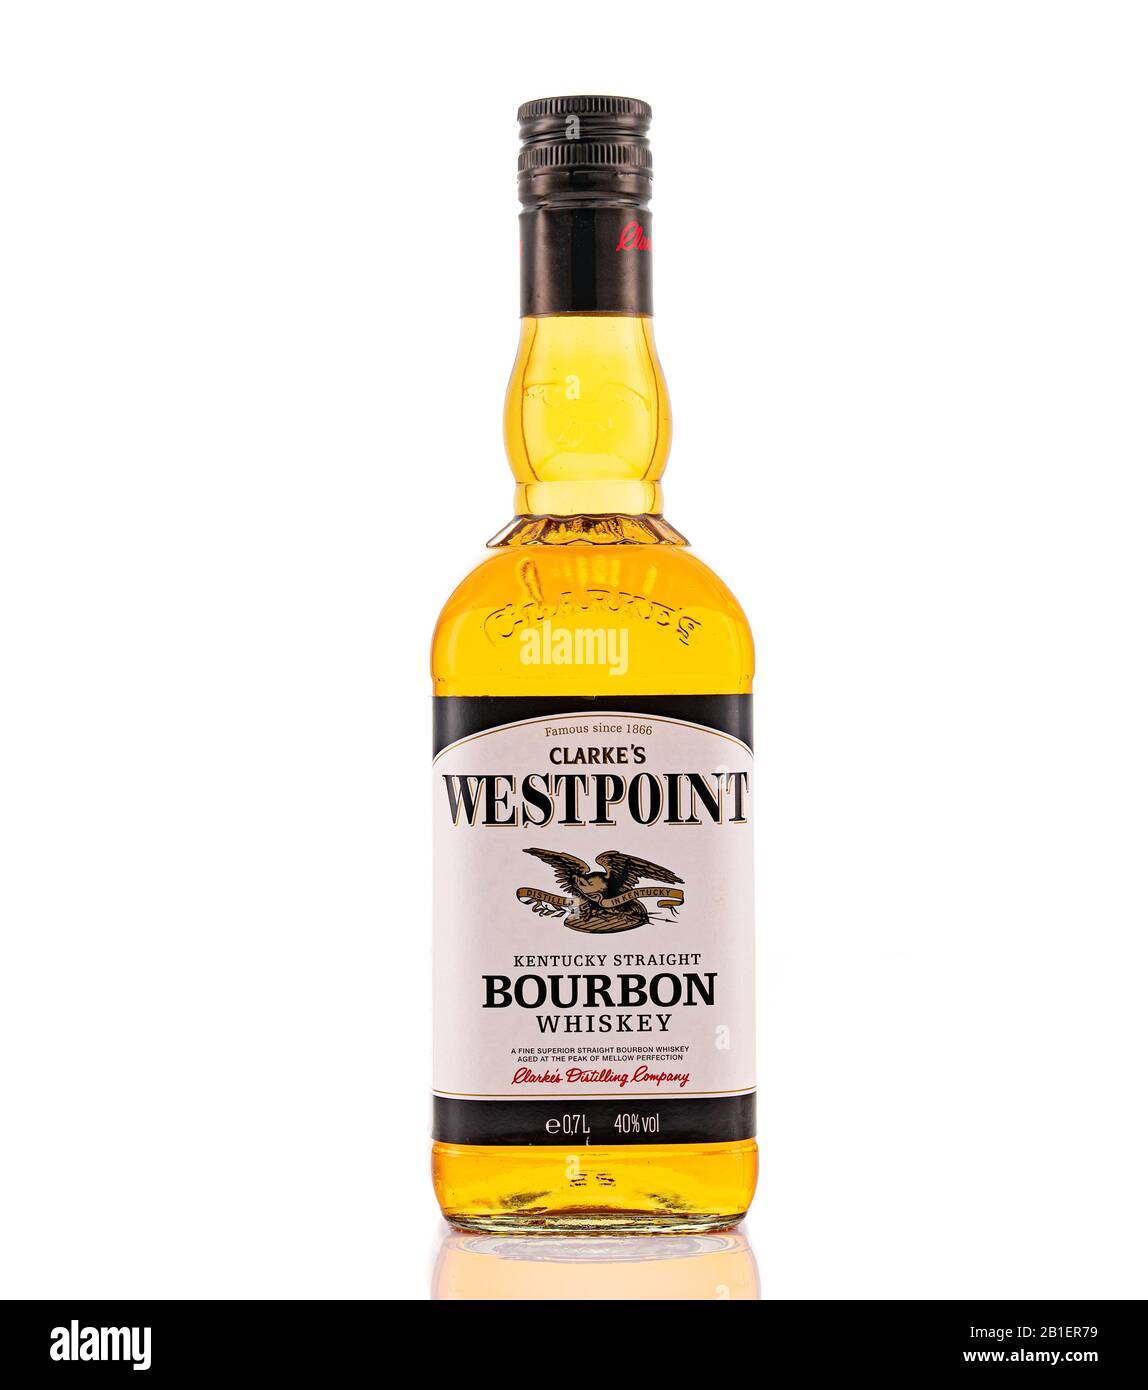 Berlin - 15. JANUAR 2020: Günstiger Westpoint Scotch Whiskey aus dem Supermarkt auf dem Ladenregal in Berlin. Westpoint Bourbon ist ein Discounter Scotch Whis Stockfoto